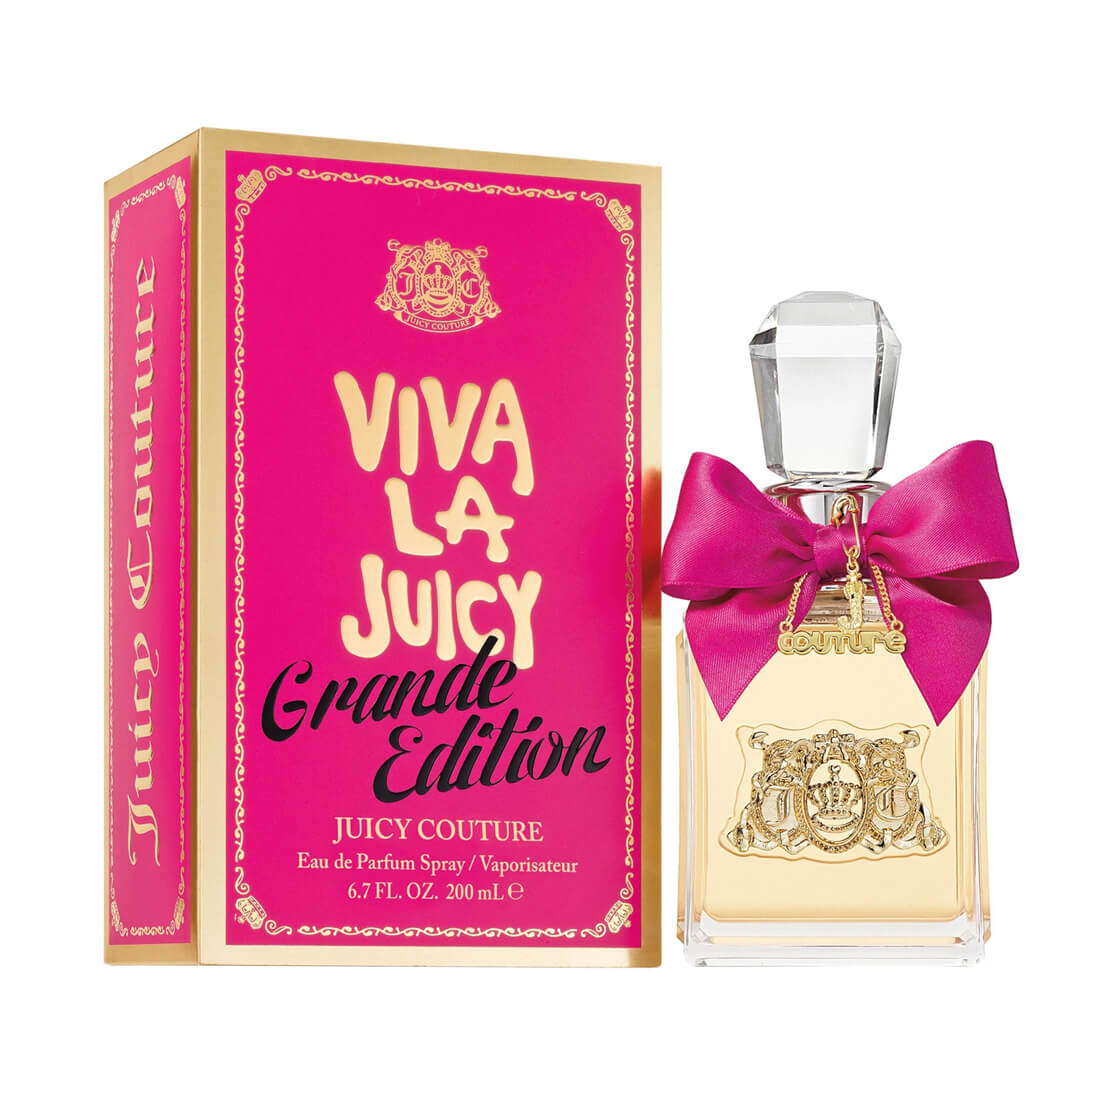 Juicy Couture Viva La Juicy Grande Edition Eau De Perfume For Women 200ml